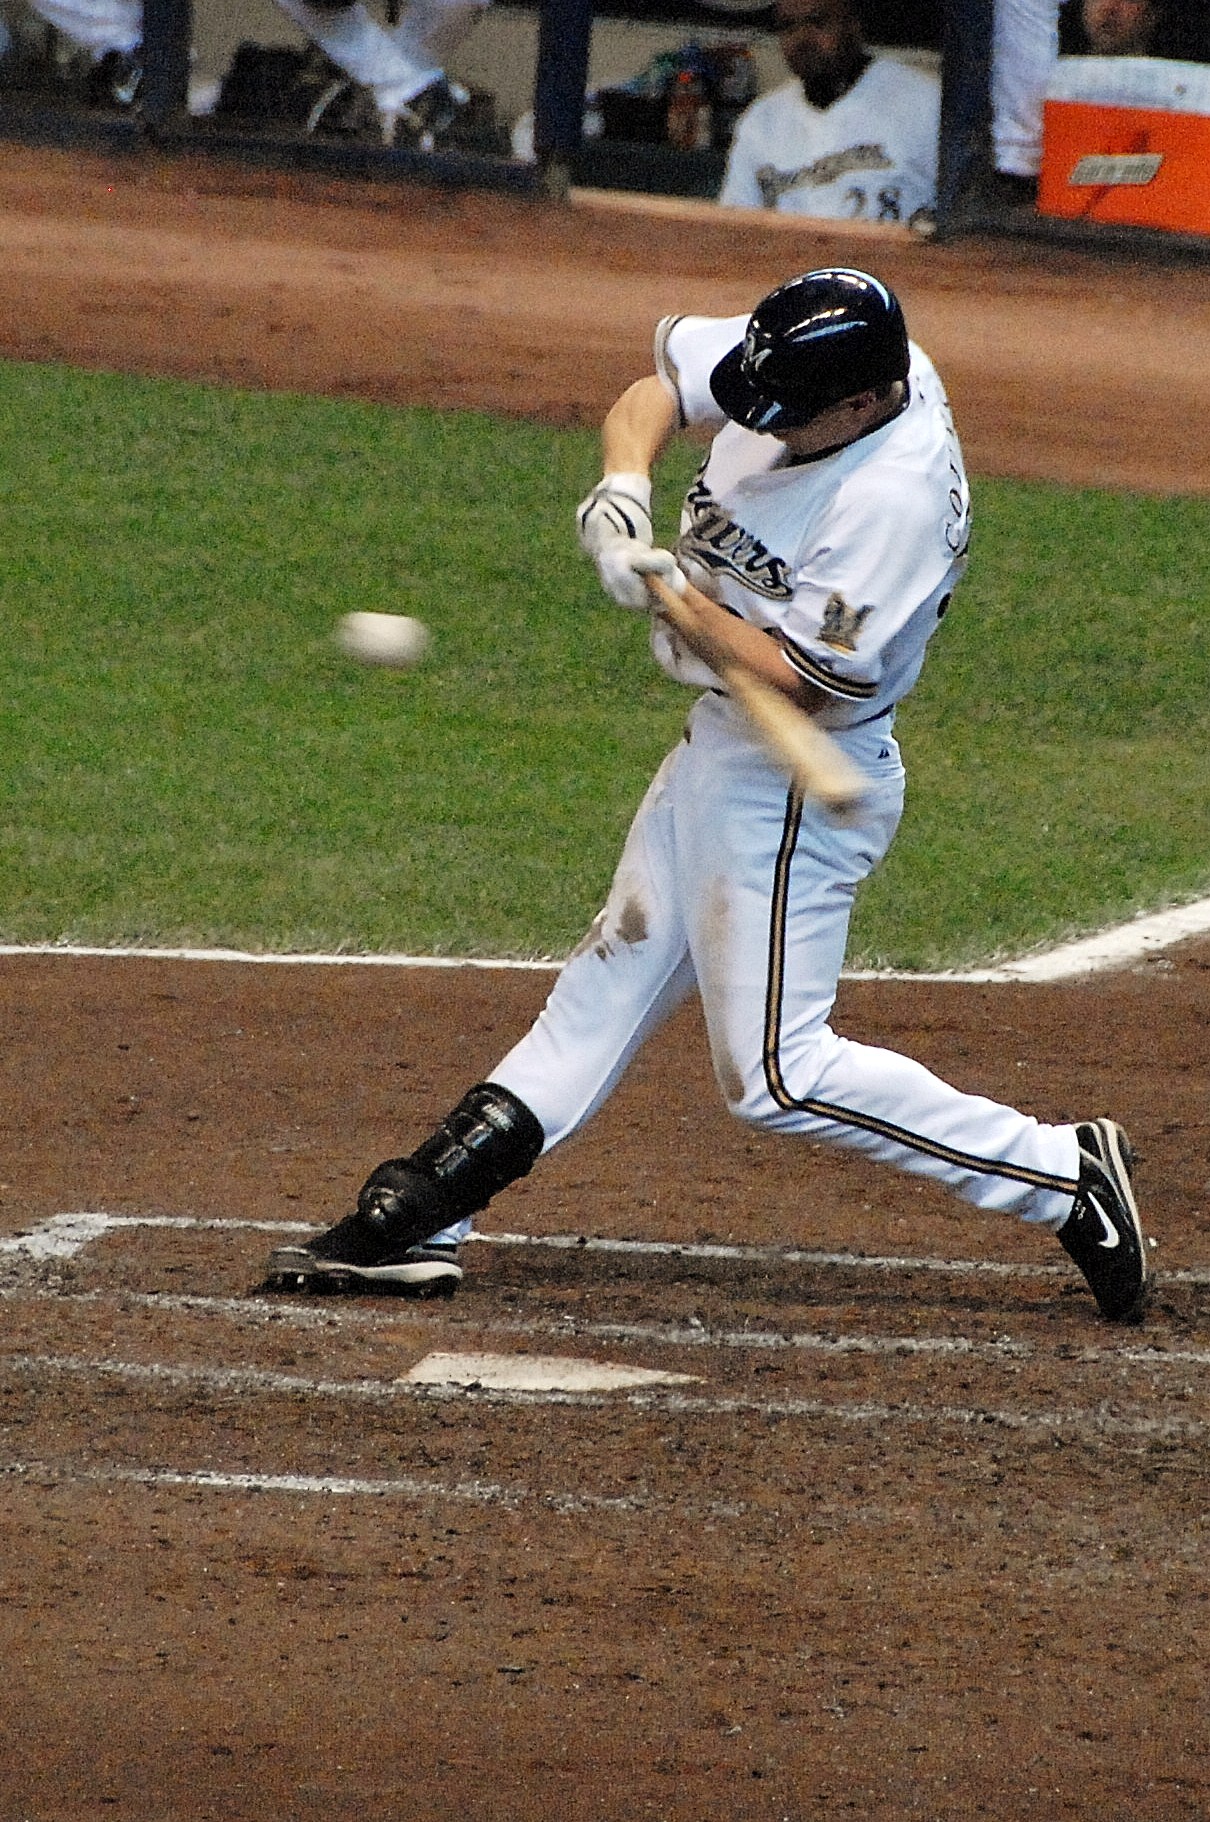 Baseball player at bat